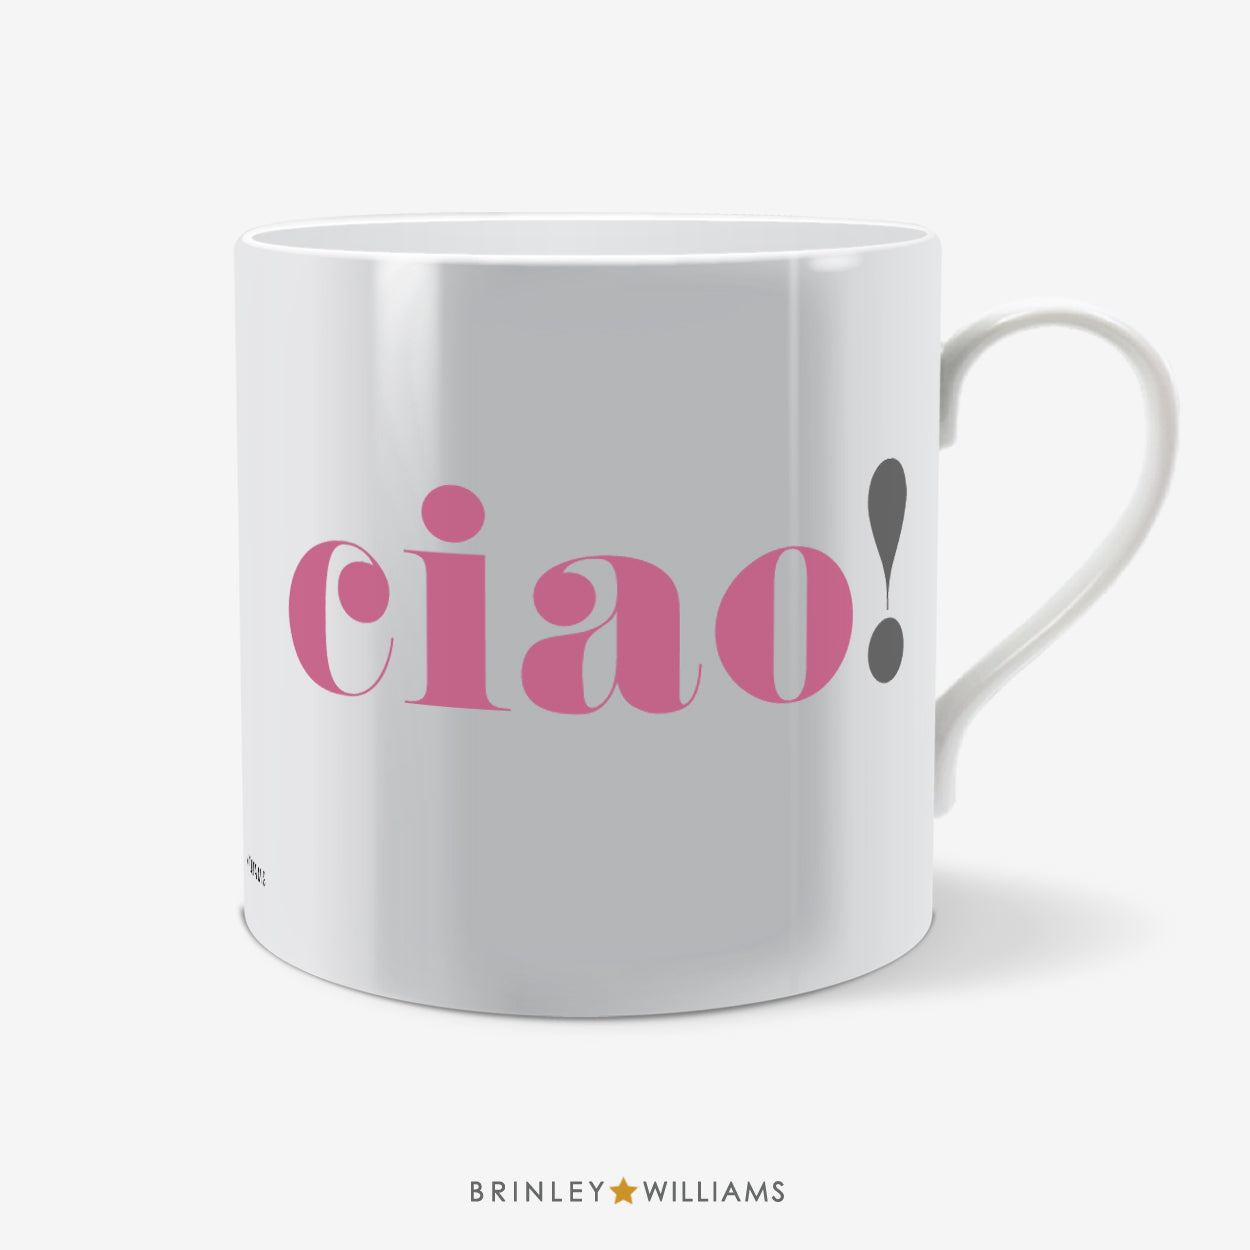 Ciao Fun Mug - Pink